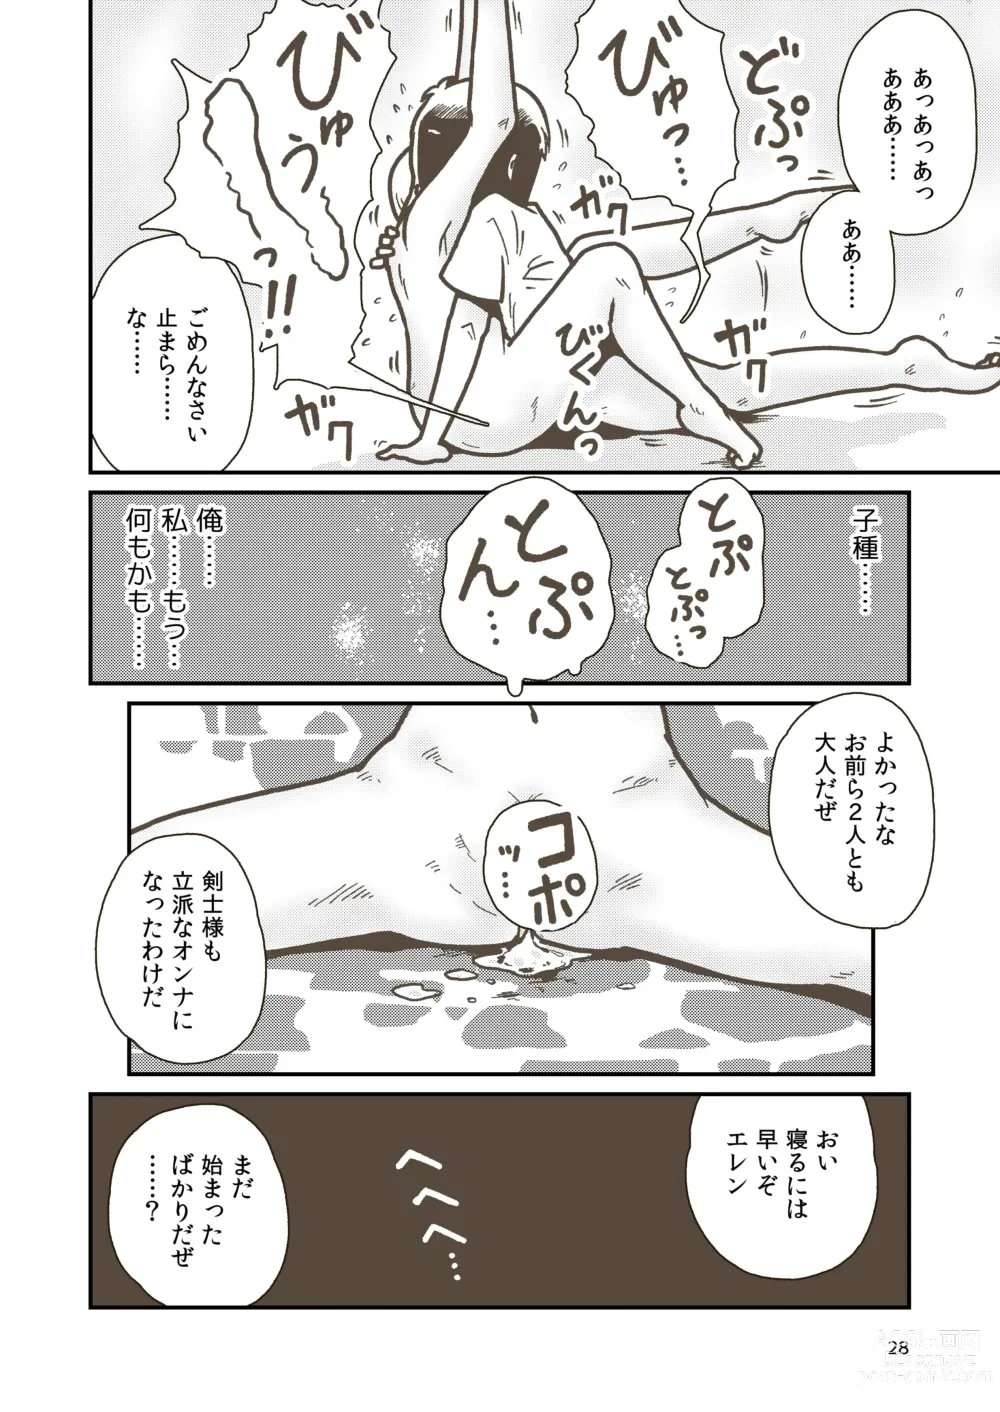 Page 27 of doujinshi Kenshi Elen no Junan